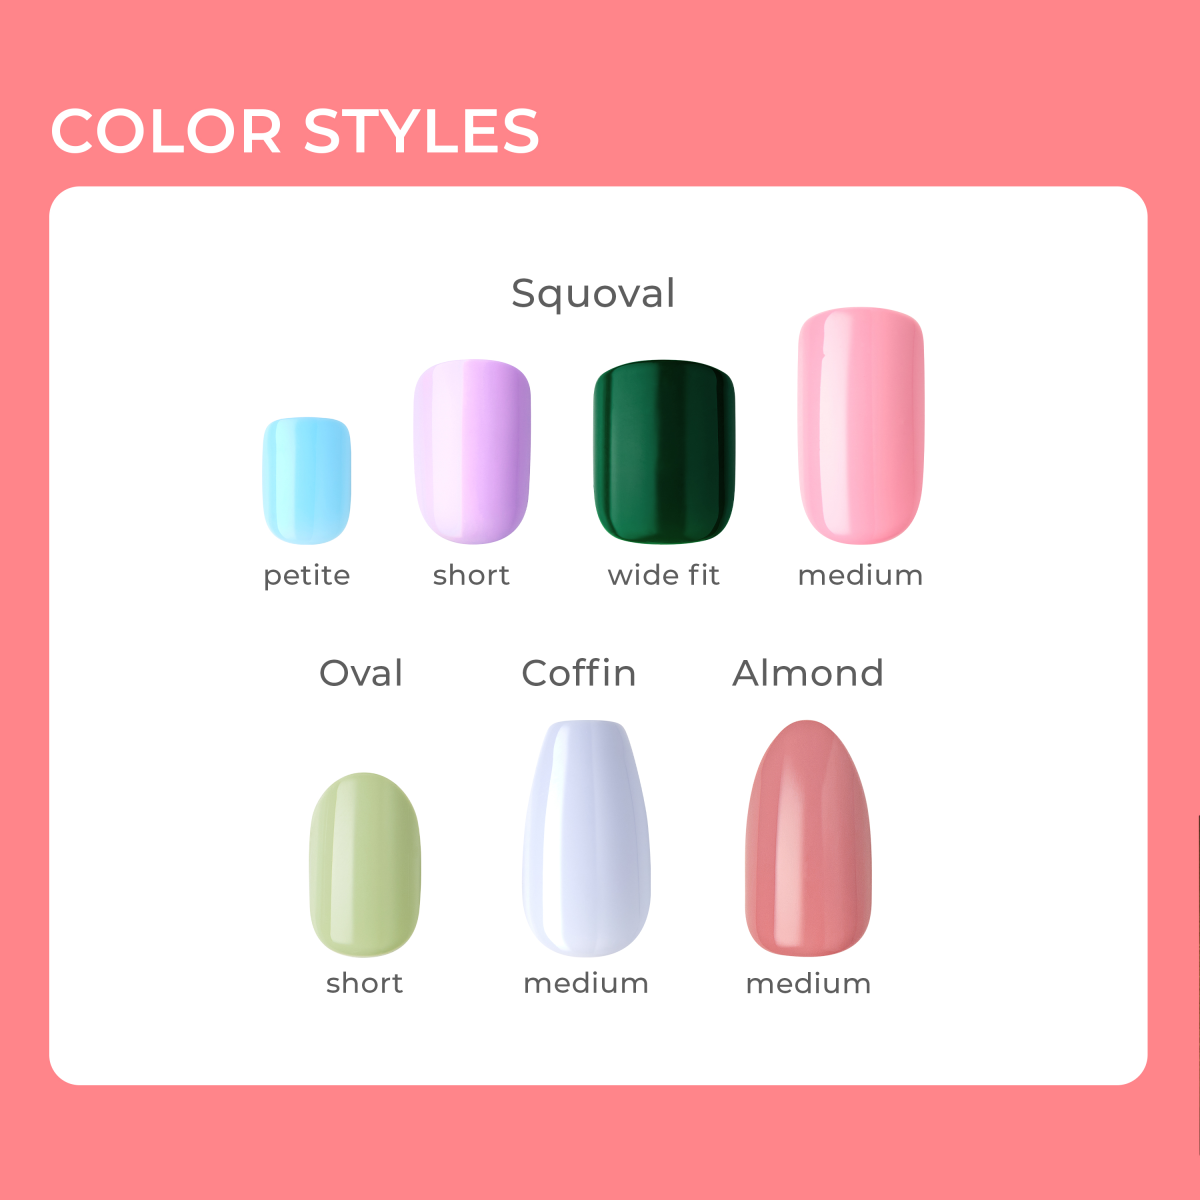 imPRESS Color Press-On Manicure - Caramel